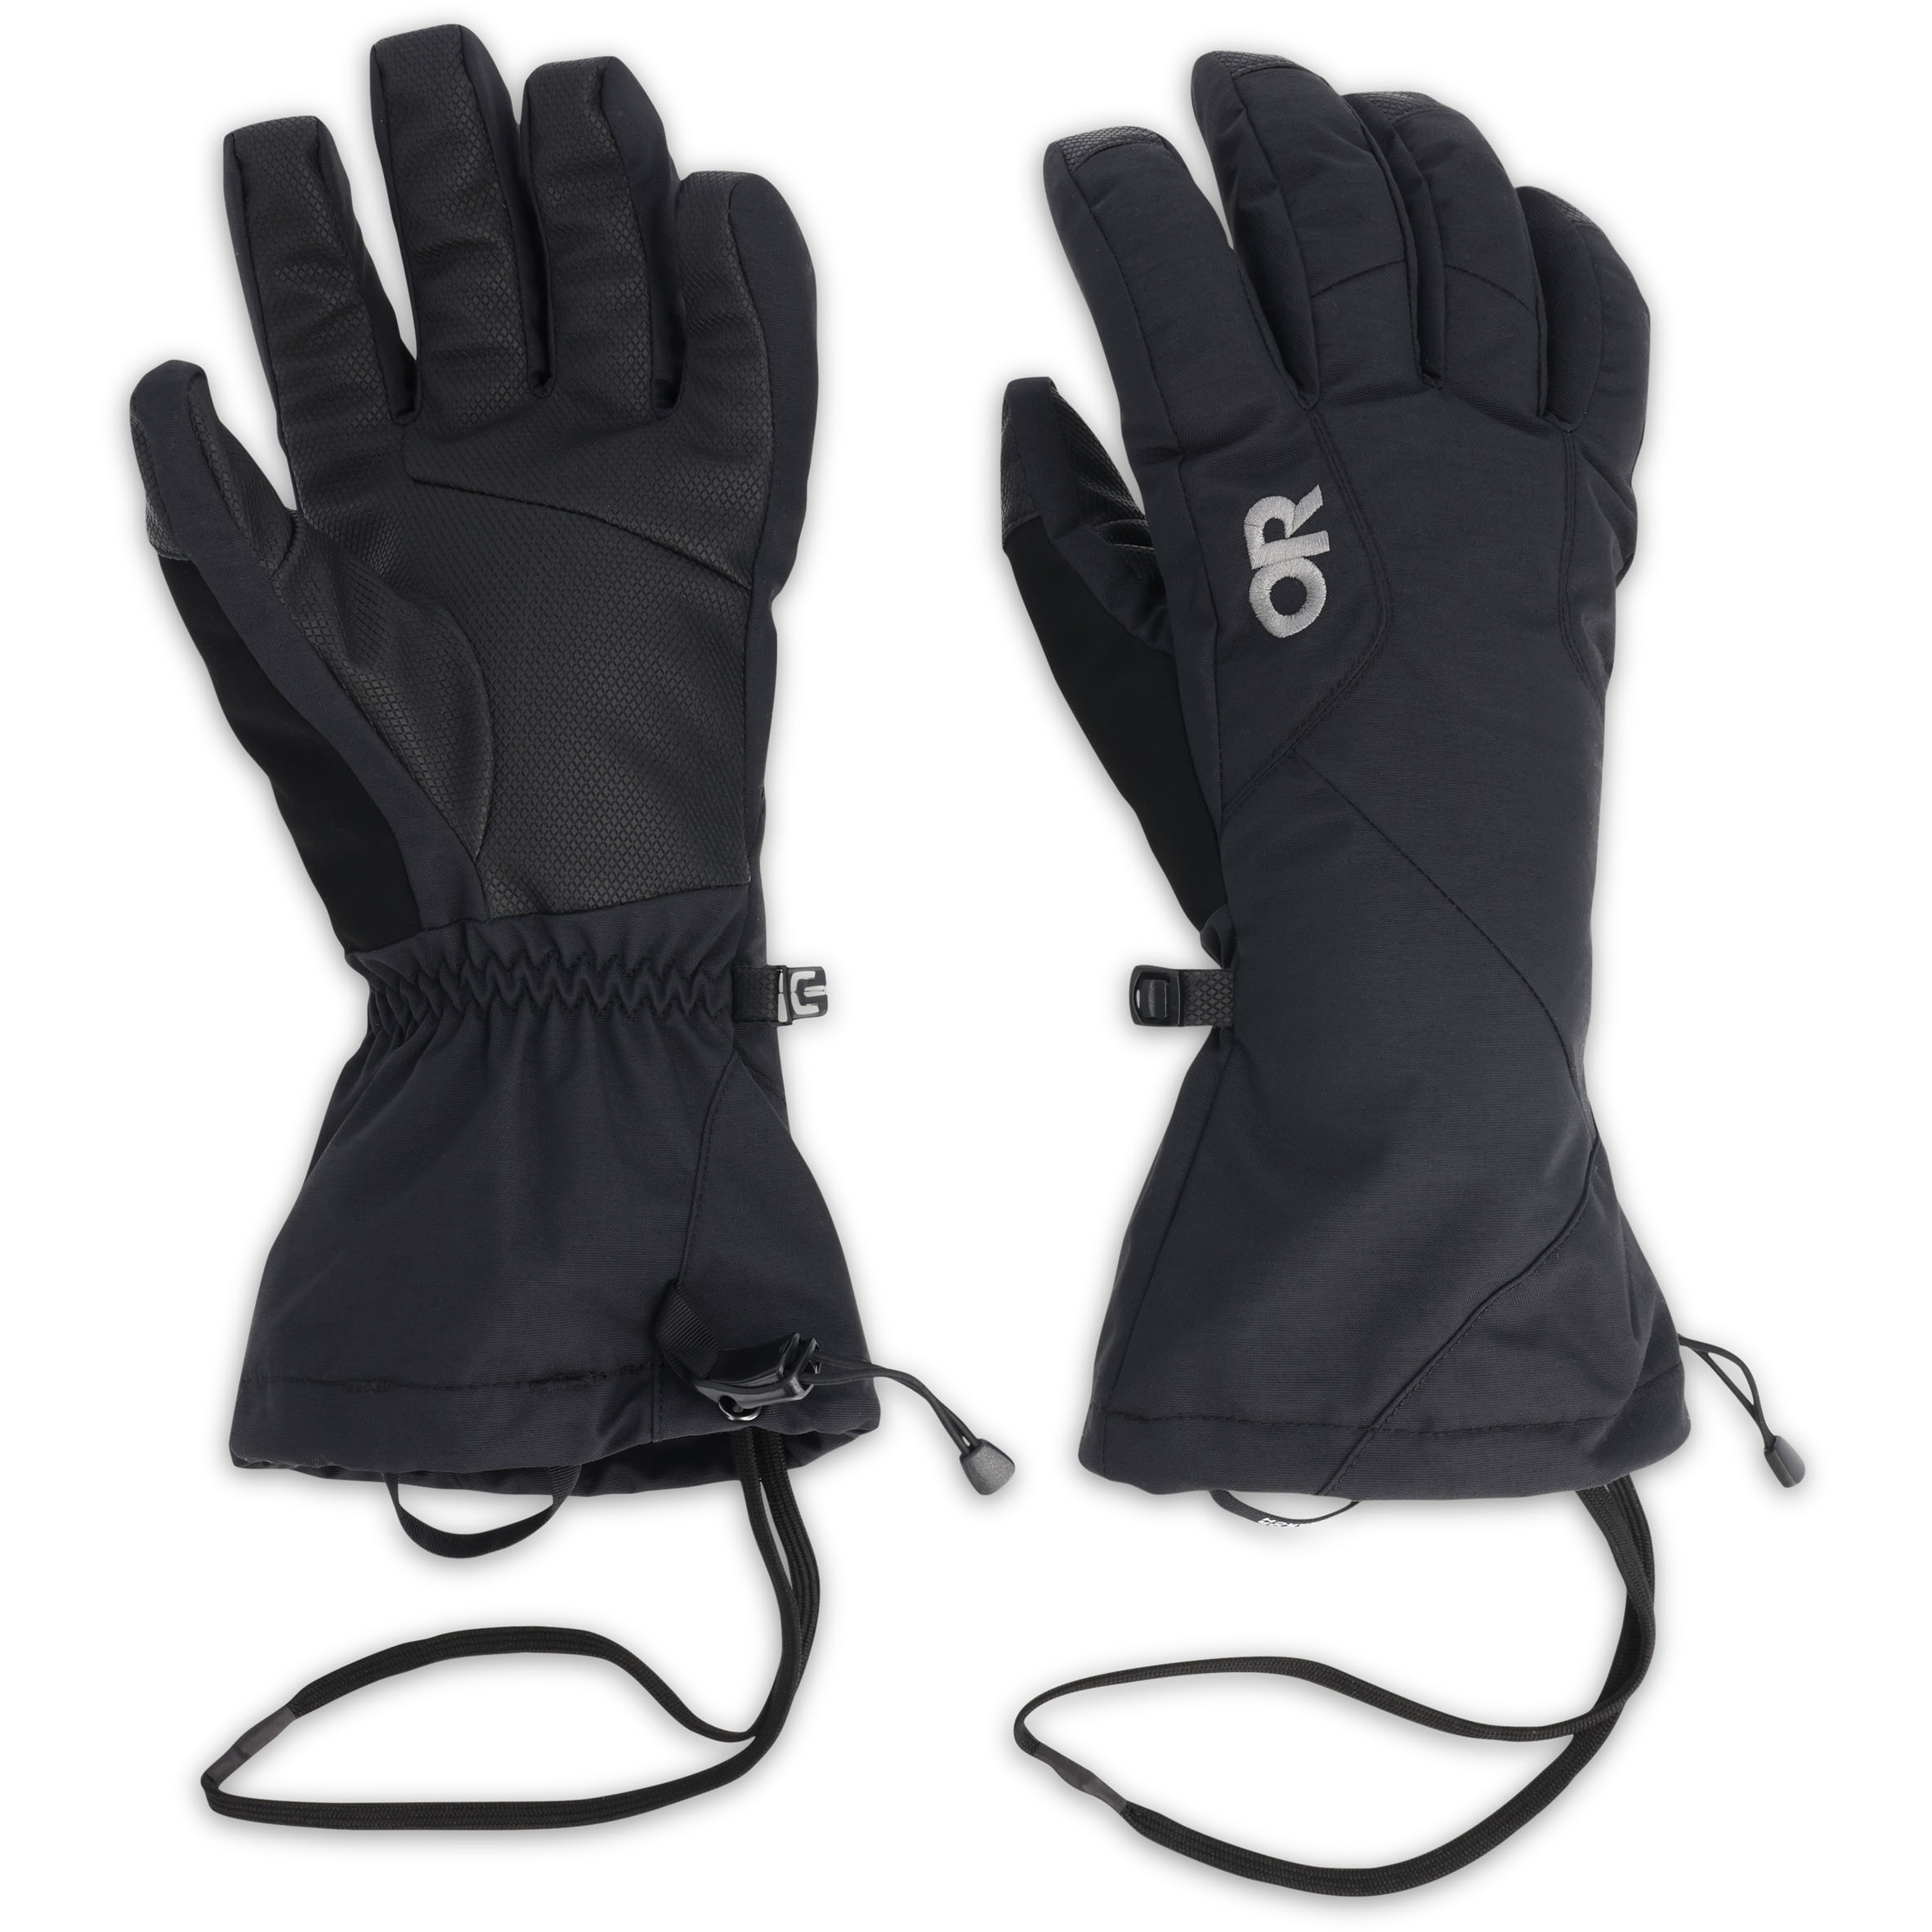 Outdoor Research Men's Adrenaline 3-in-1 Gloves | Enwild